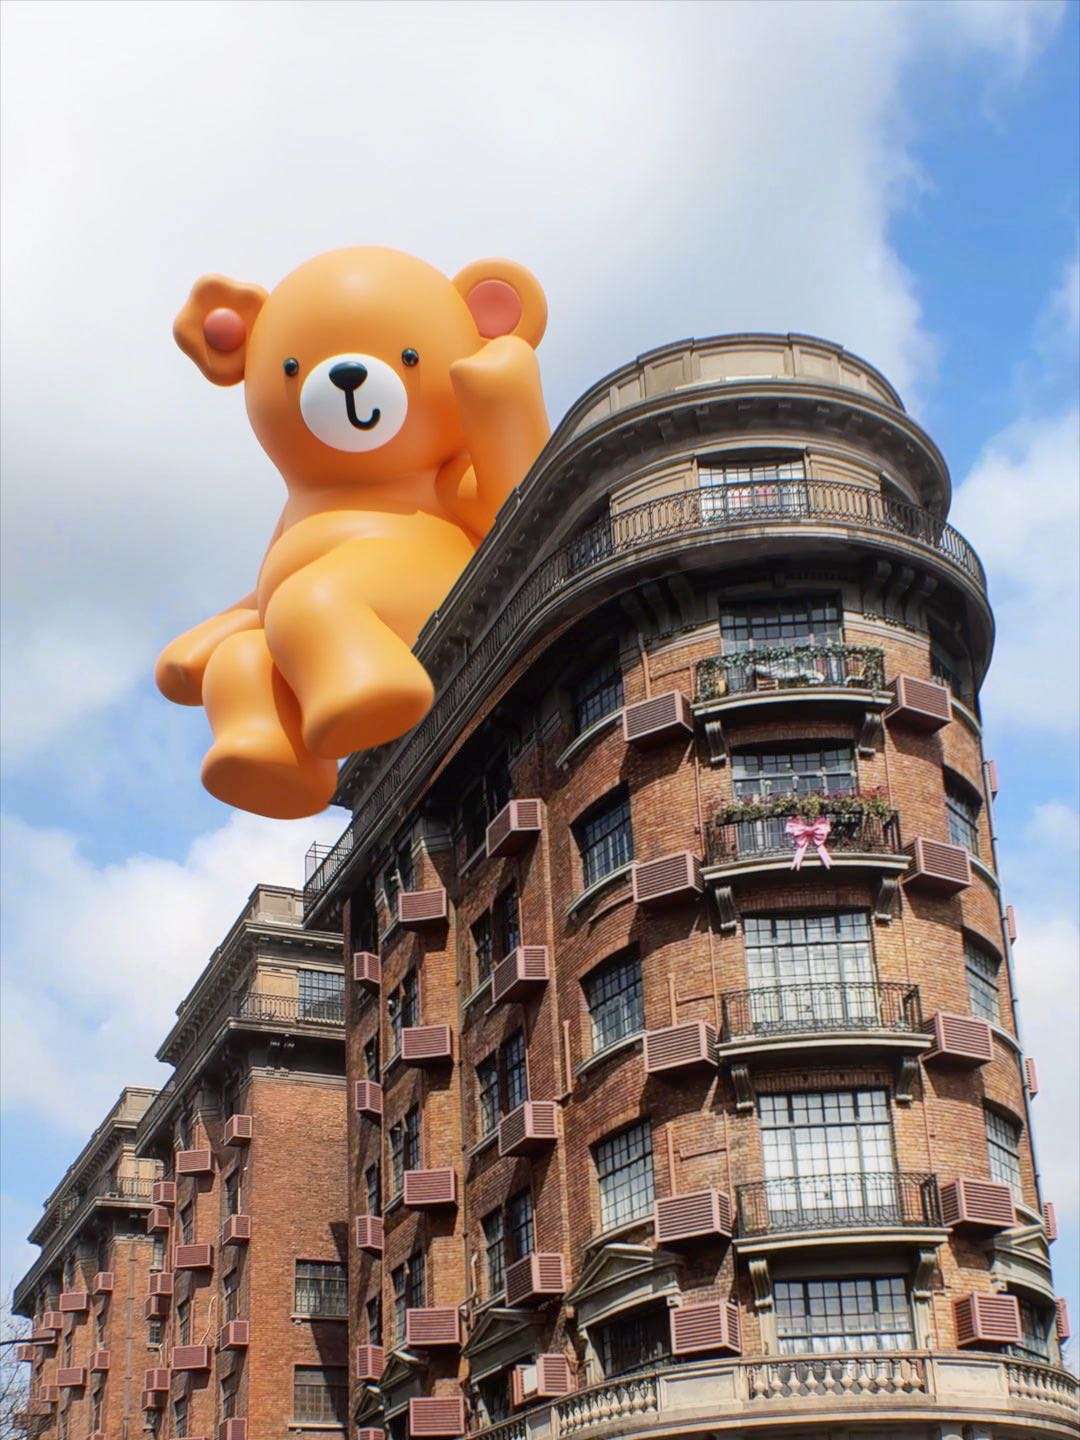 武康路City walk发现今天的武康大楼坐上了一只玩具小熊！